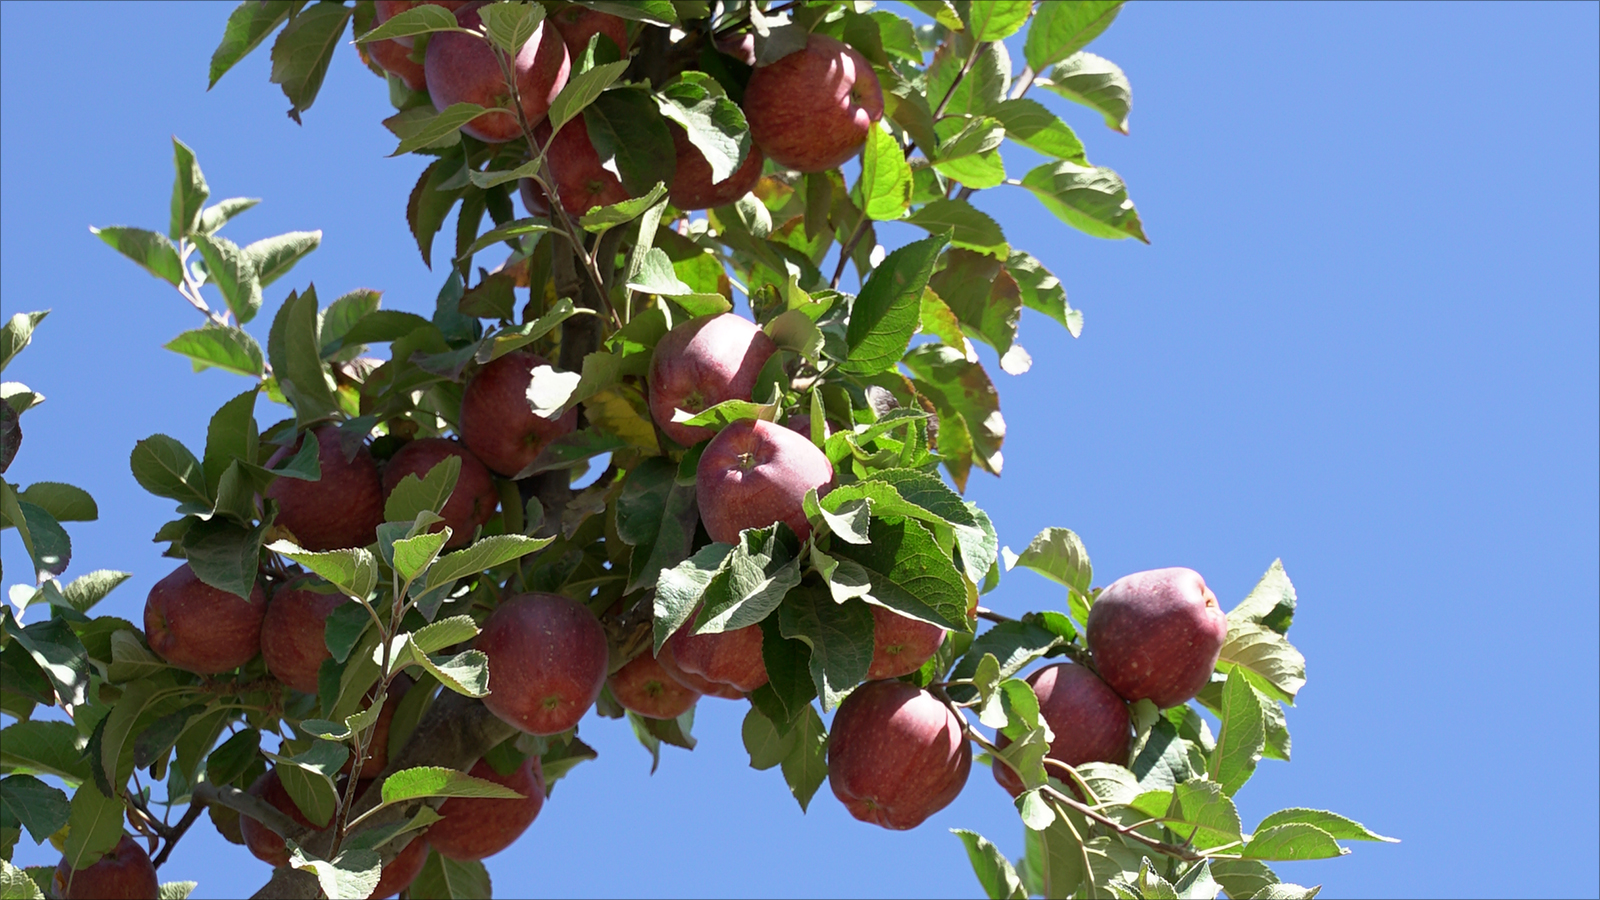 التفاح من أهم المنتجات الزراعية اللبنانية 